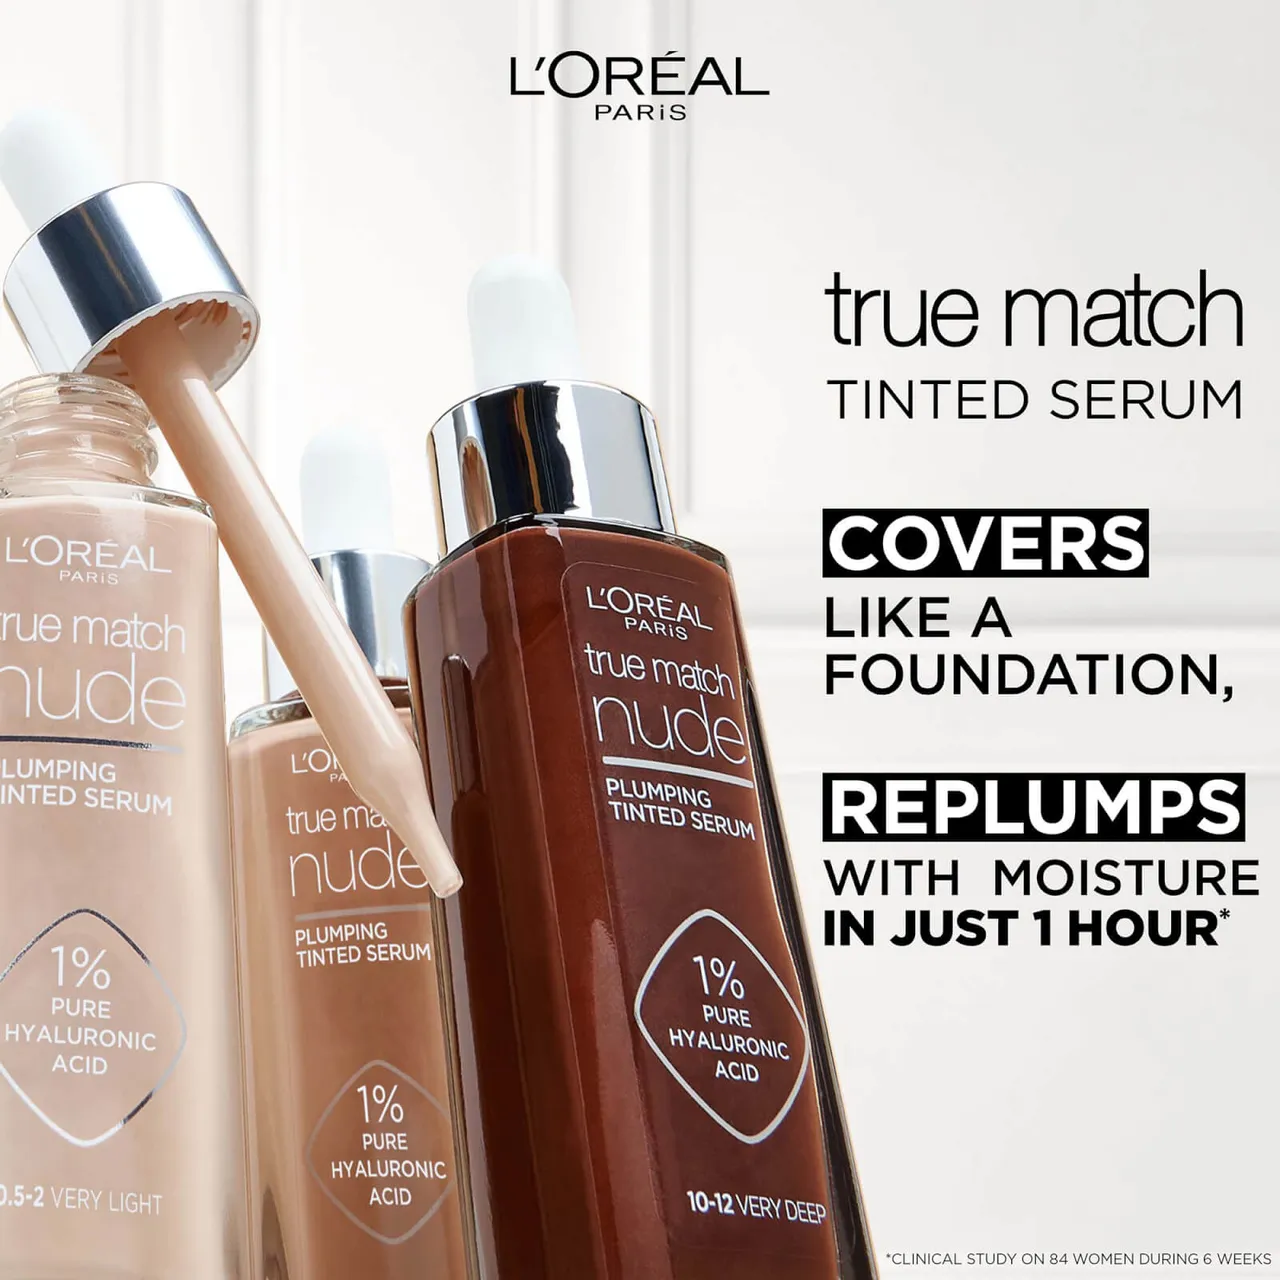 L'Oréal Paris True Match Nude Plumping Tinted Serum (Various Shades) - 2-3  Light